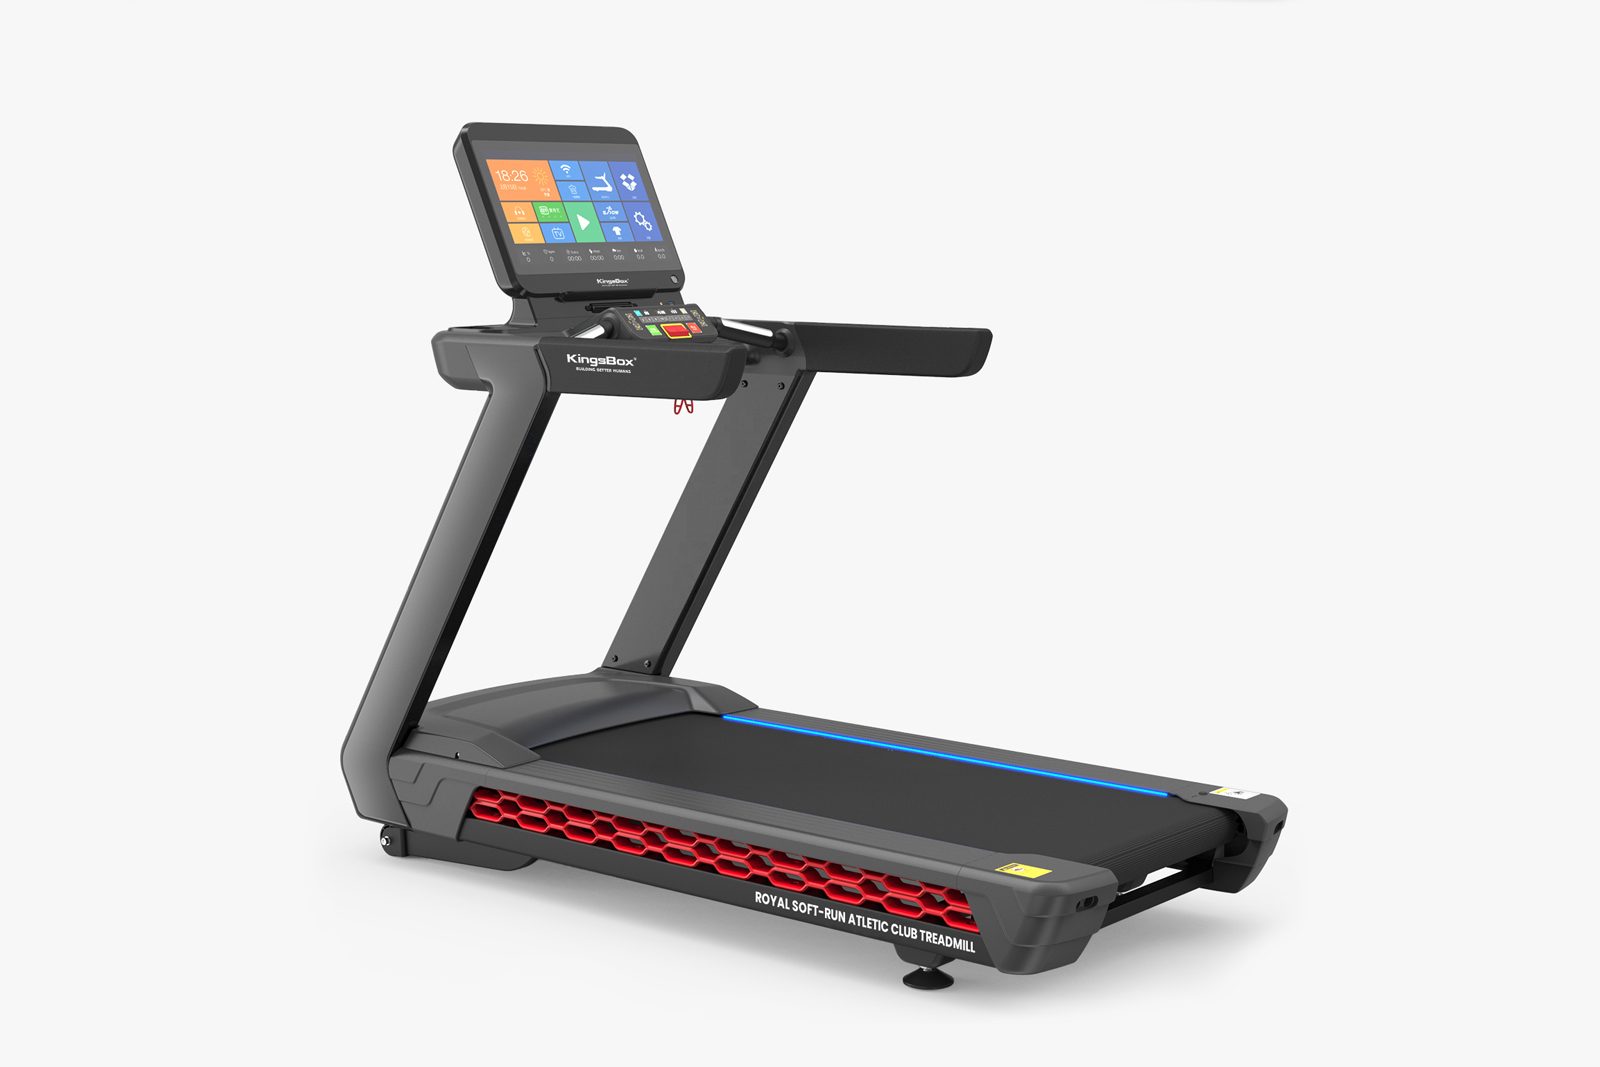 Royal Soft-Run Athletic Club Treadmill